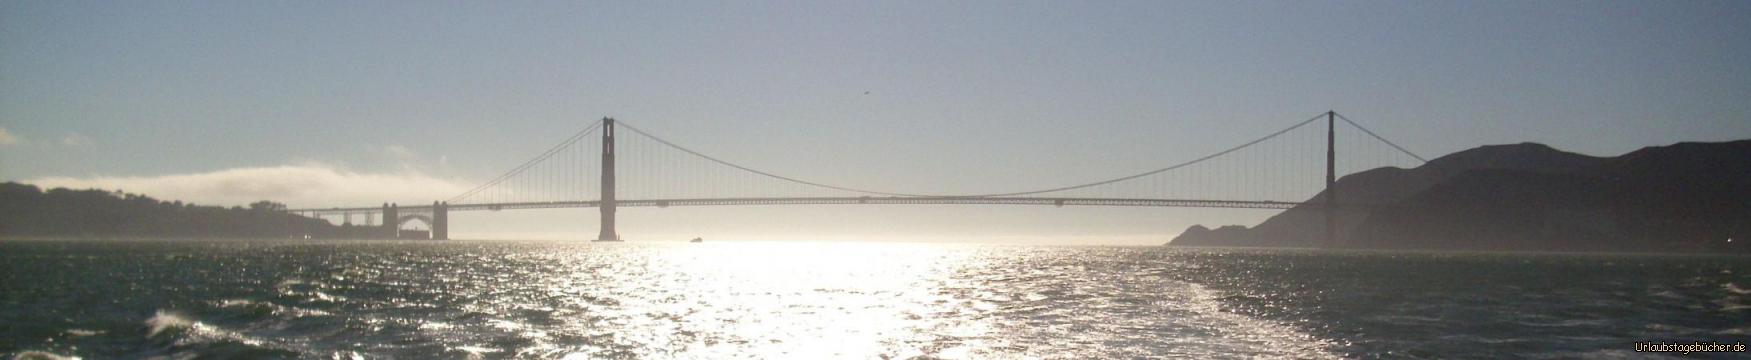 Golden Gate Bridge: die Golden Gate Bridge, von der San Francisco Bay aus gesehen, trennt die Bucht von San Francisco vom Pazifik, verbindet
mit einer Gesamtlänge von 2737m San Francisco mit dem Marin County und war bei ihrer Eröffnung 1937 die längste Hängebrücke der Welt